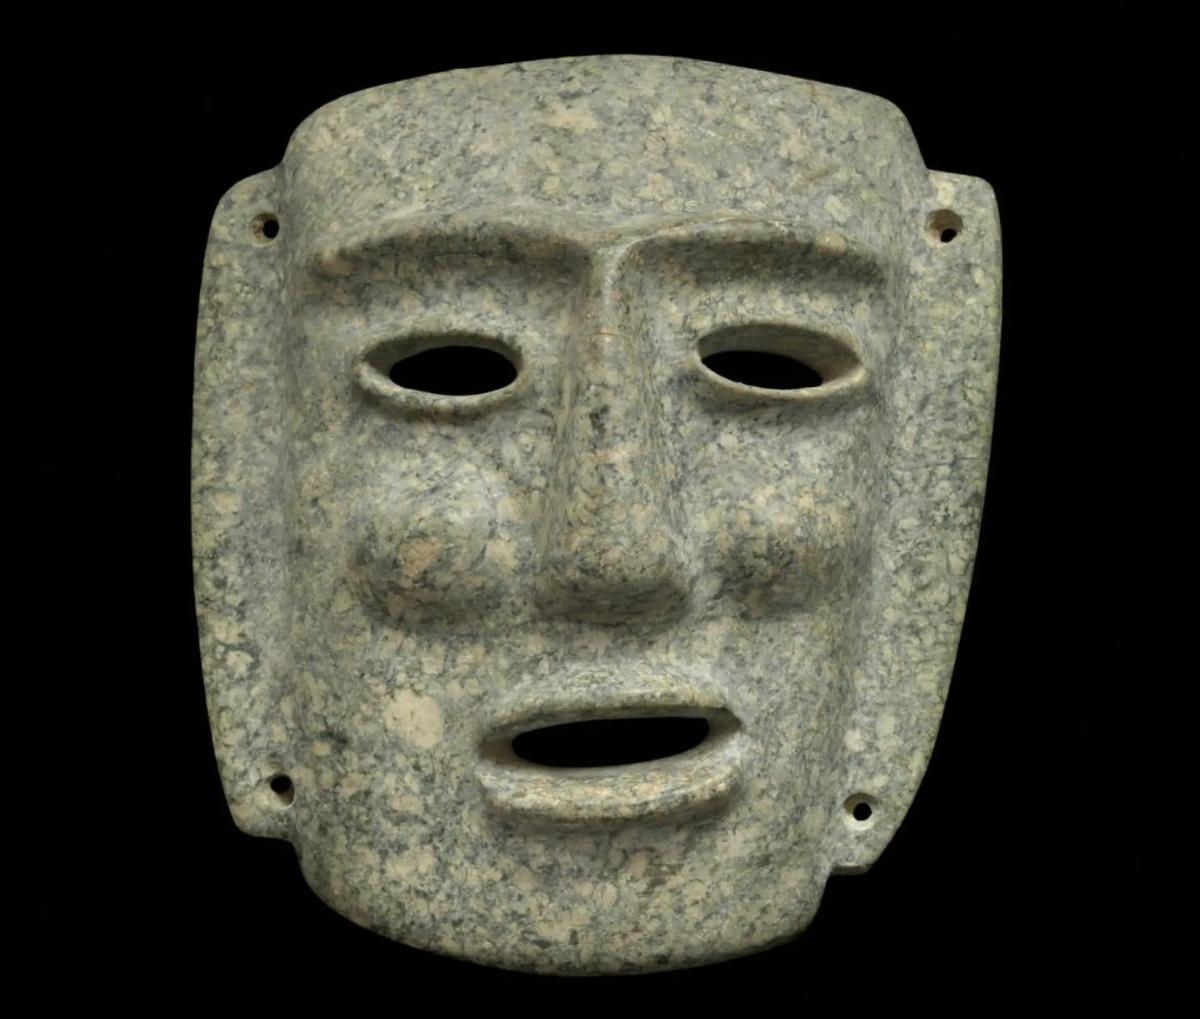 Masque en marbre précolombien proposé dans la vente, datant de 400 à 100 avant notre ère. Courtesy Millon